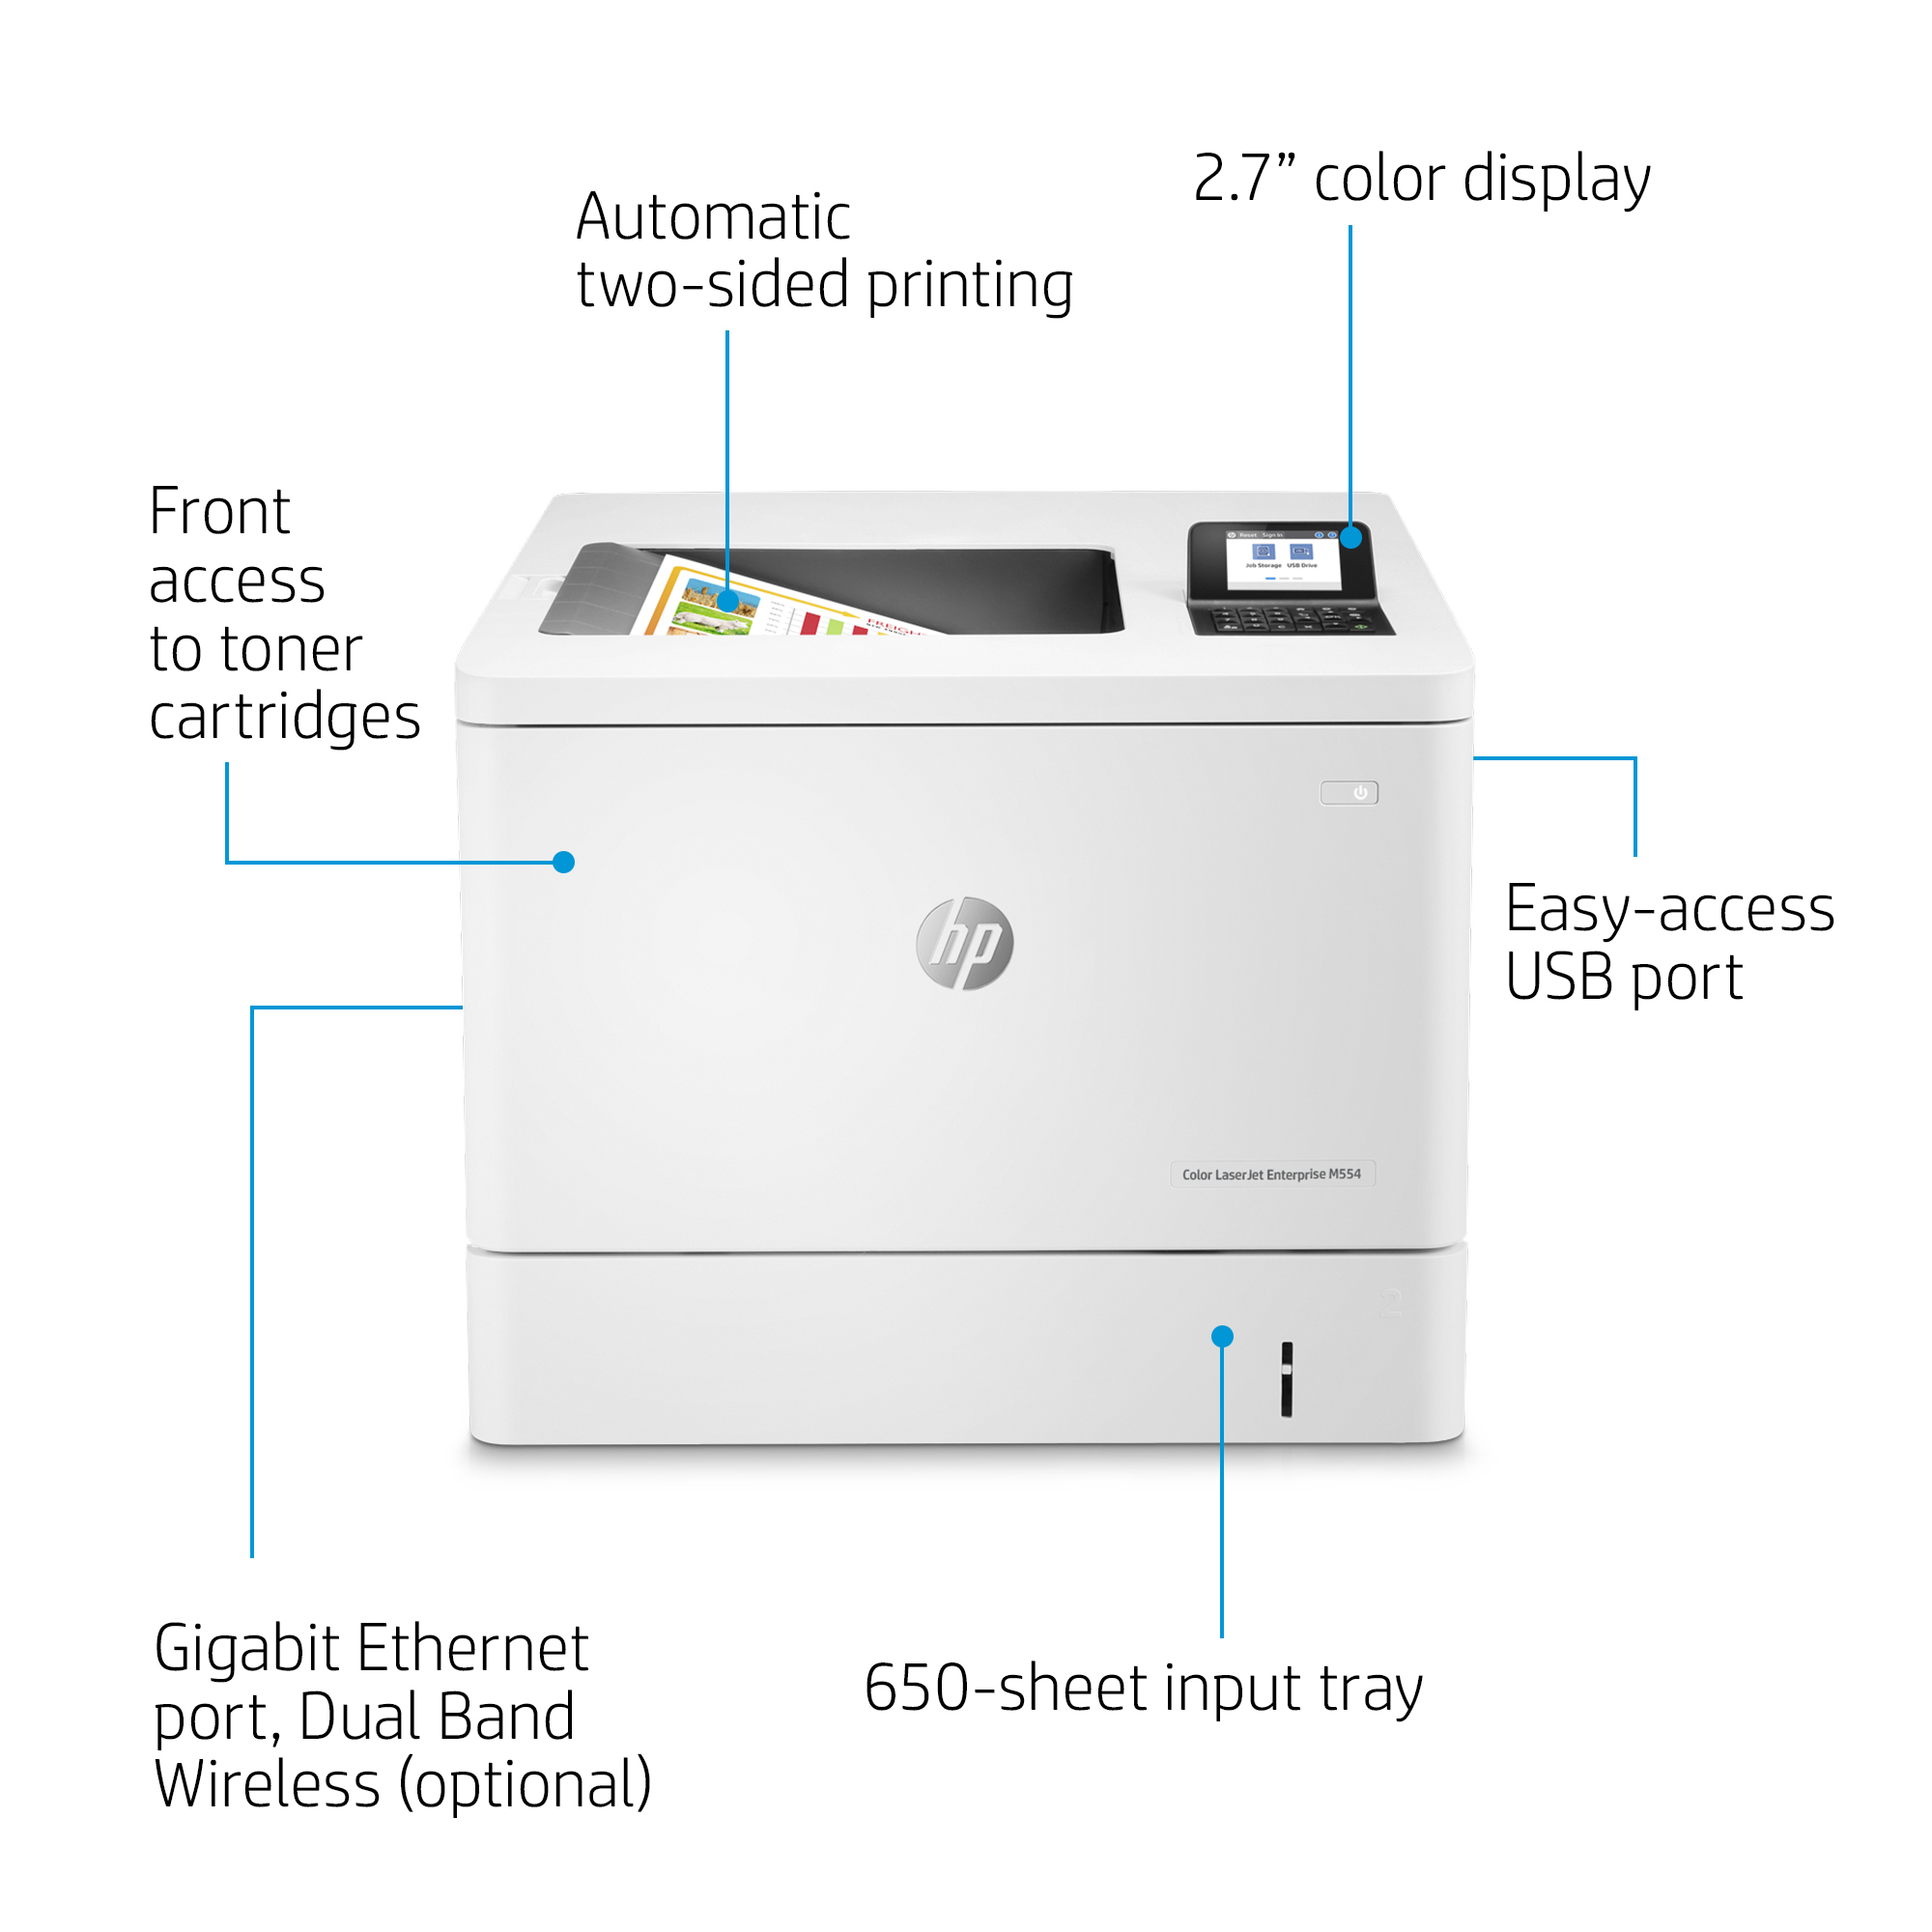 HP LaserJet Enterprise M554dn - Drucker - Farbe - Duplex - Laser